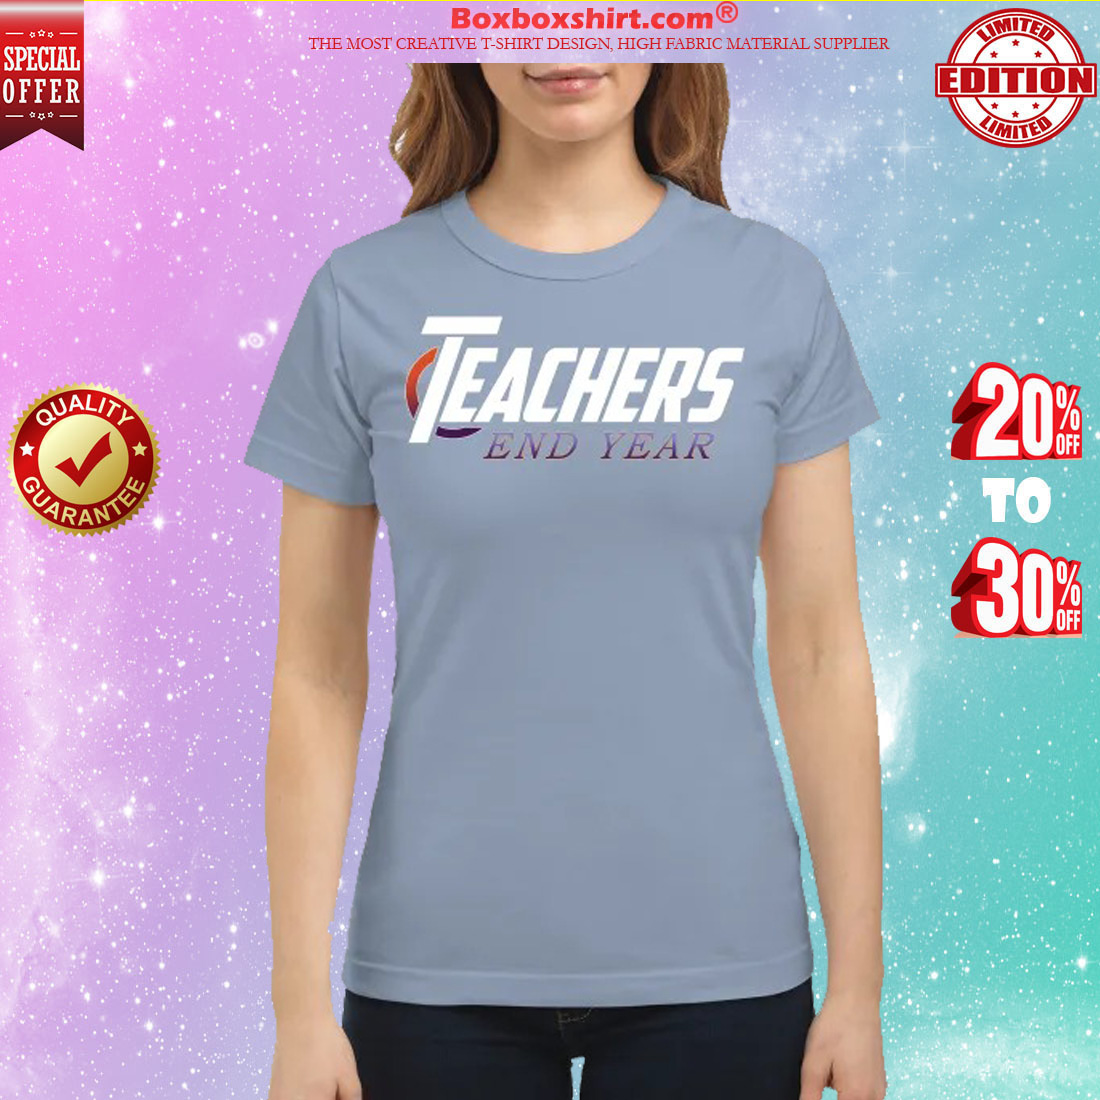 Avengers teachers end year classic shirt